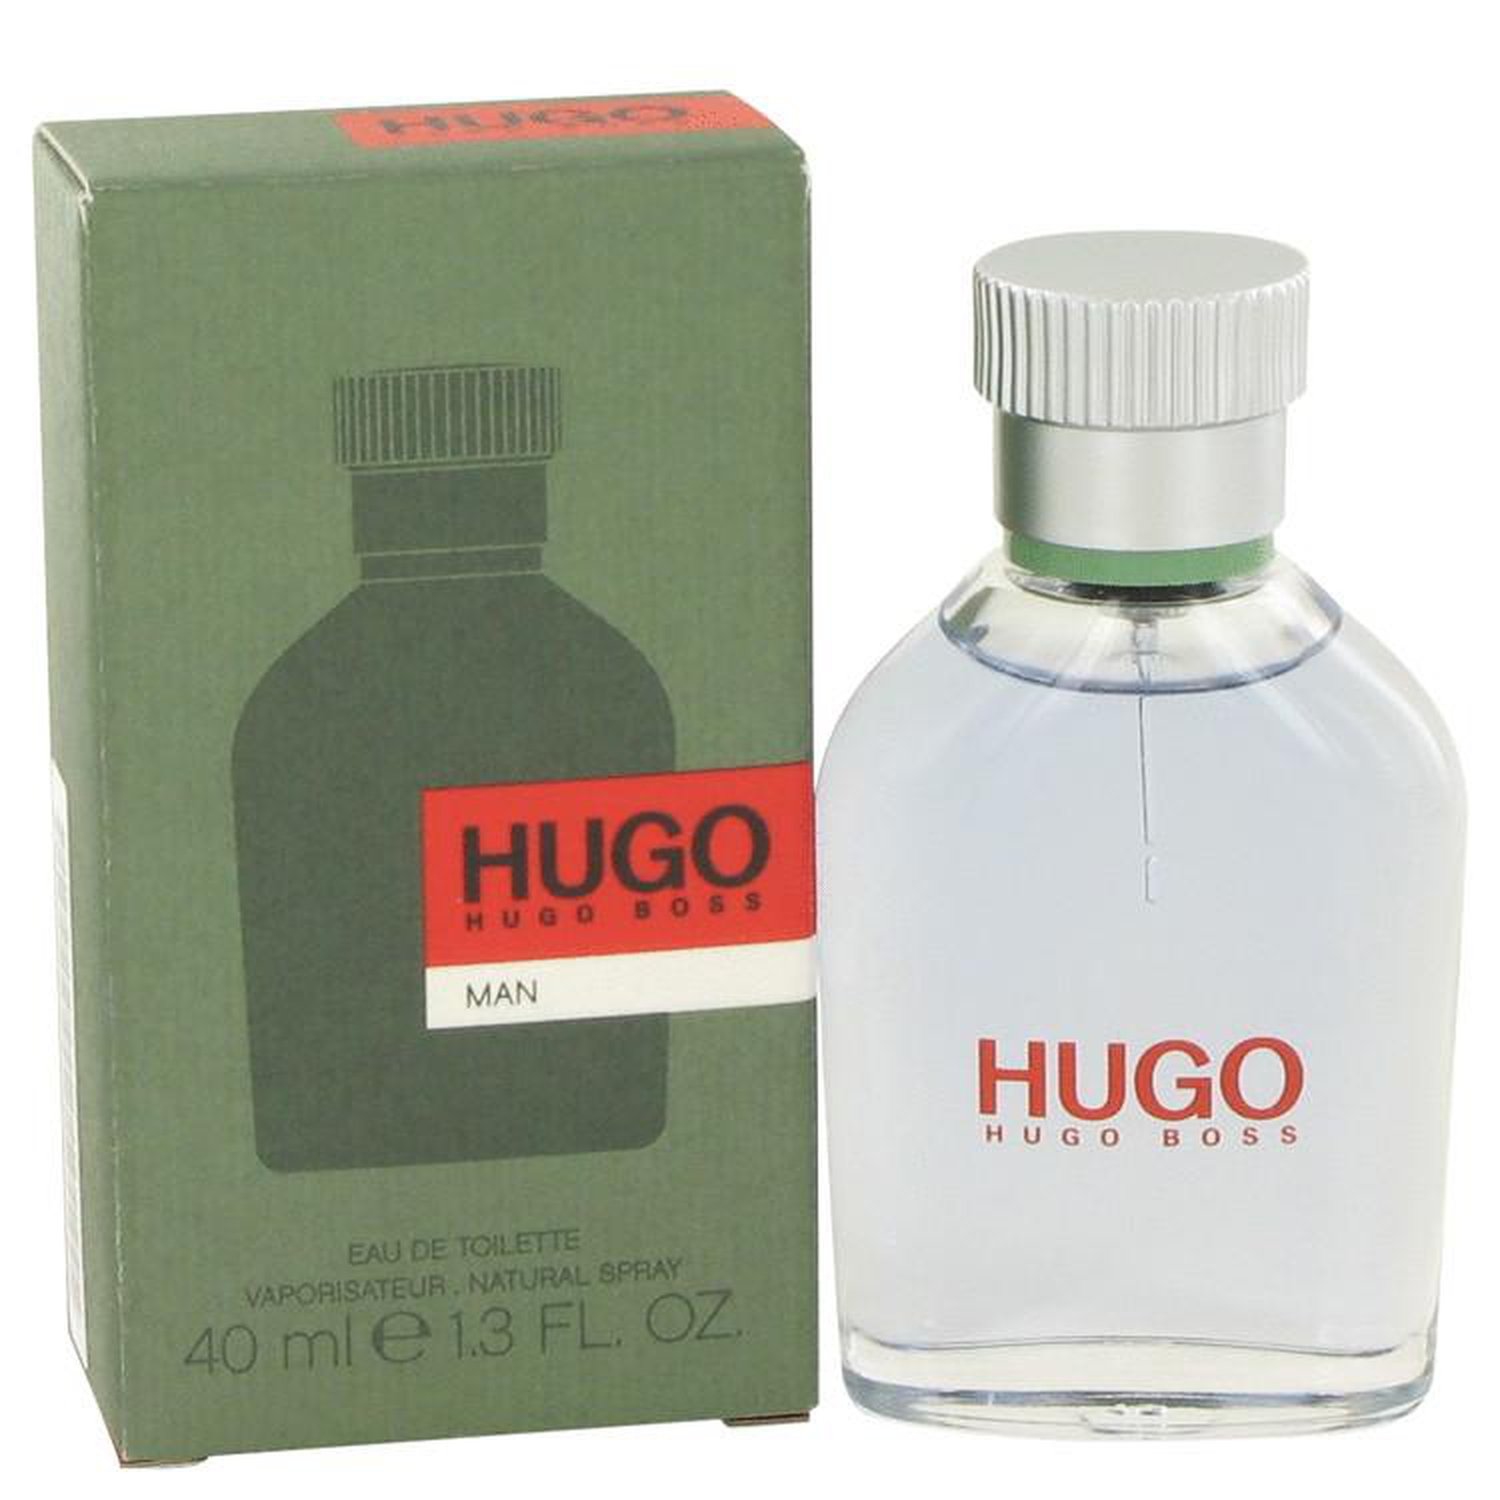 Hugo By Hugo Boss Edt Cologne Spray 1.3 Oz